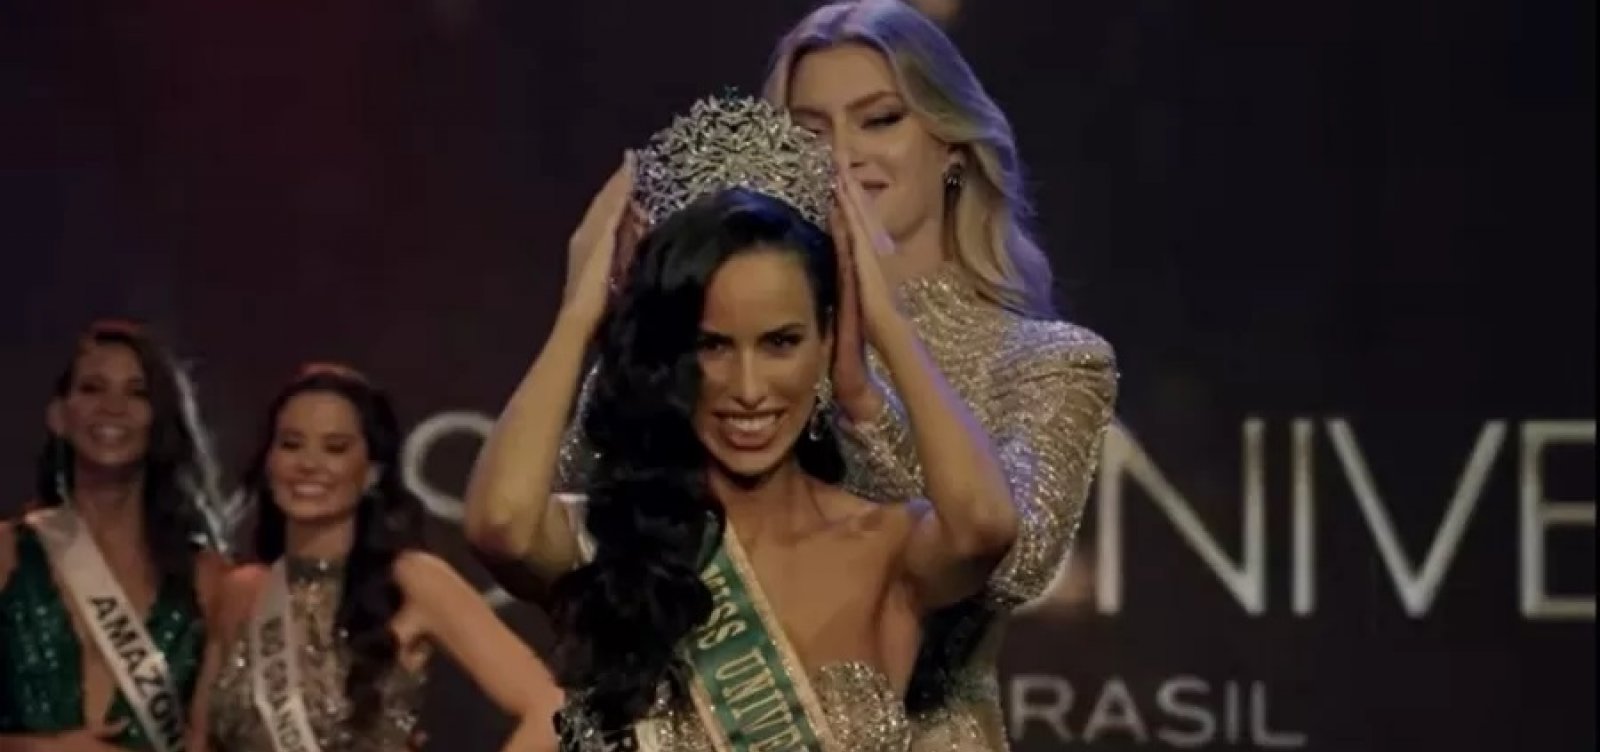 Com Mia Mamede, Espírito Santo vence Miss Brasil pela primeira vez na história 